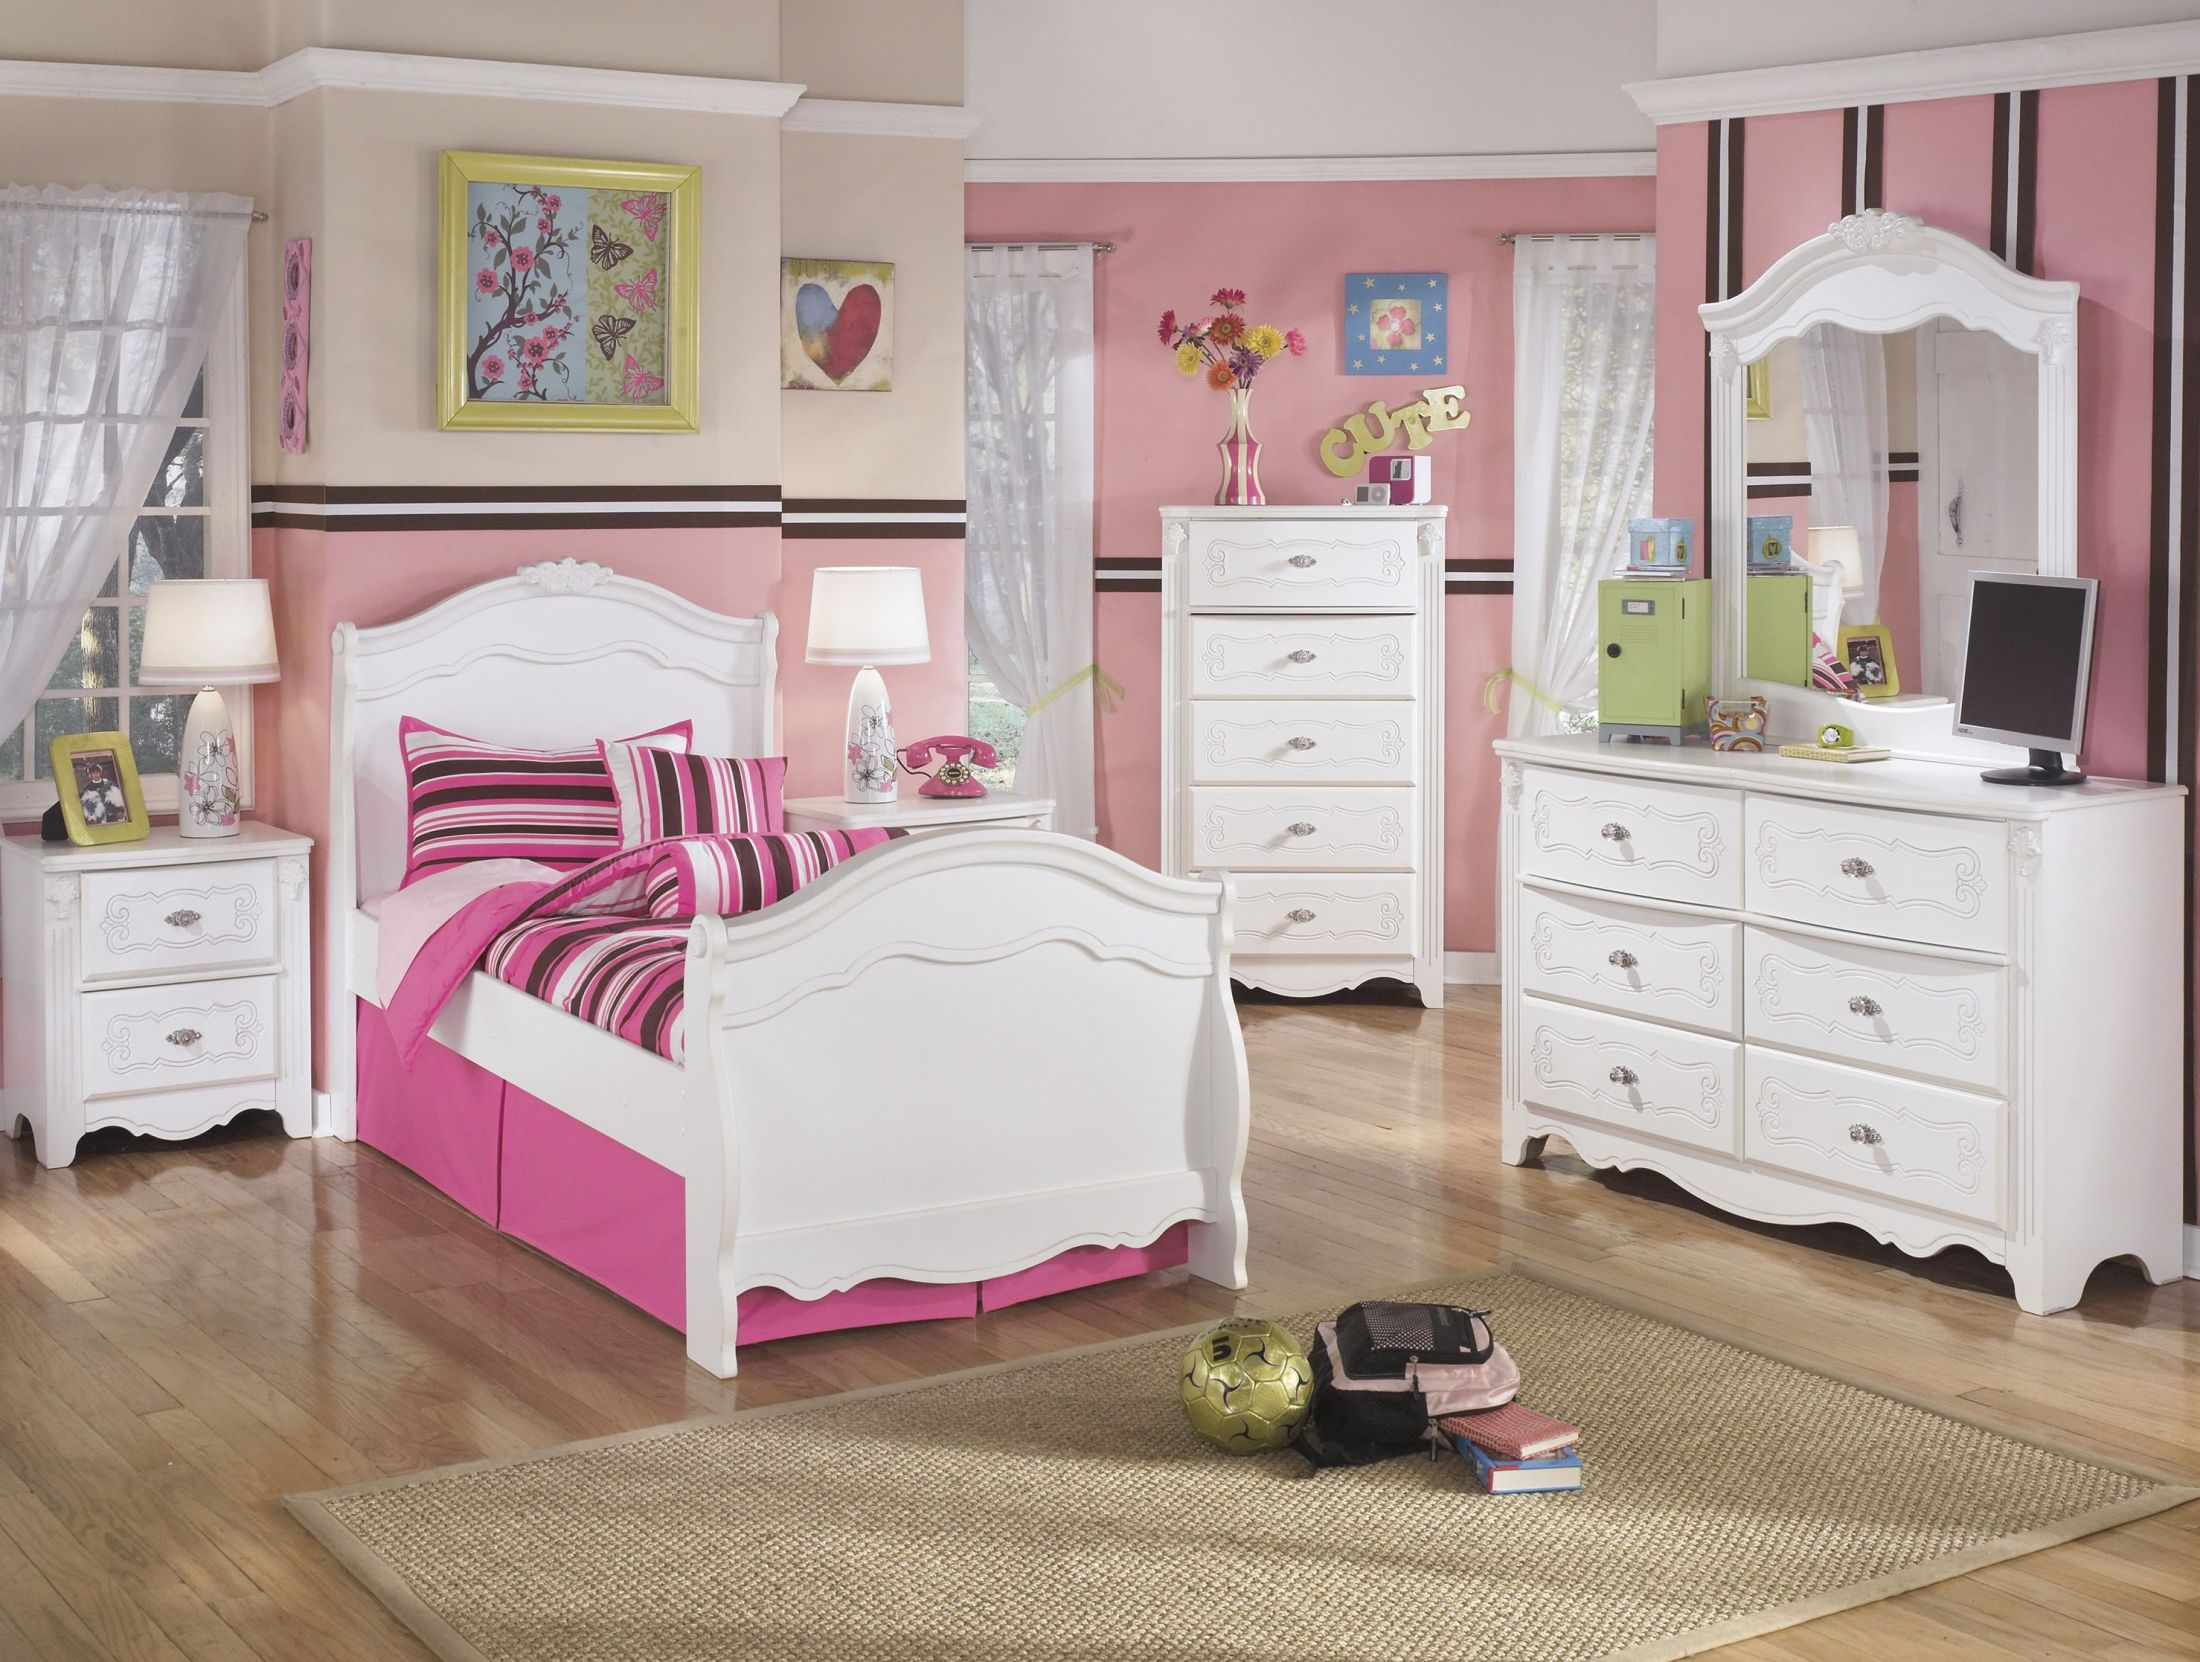 exquisite bedroom furniture set